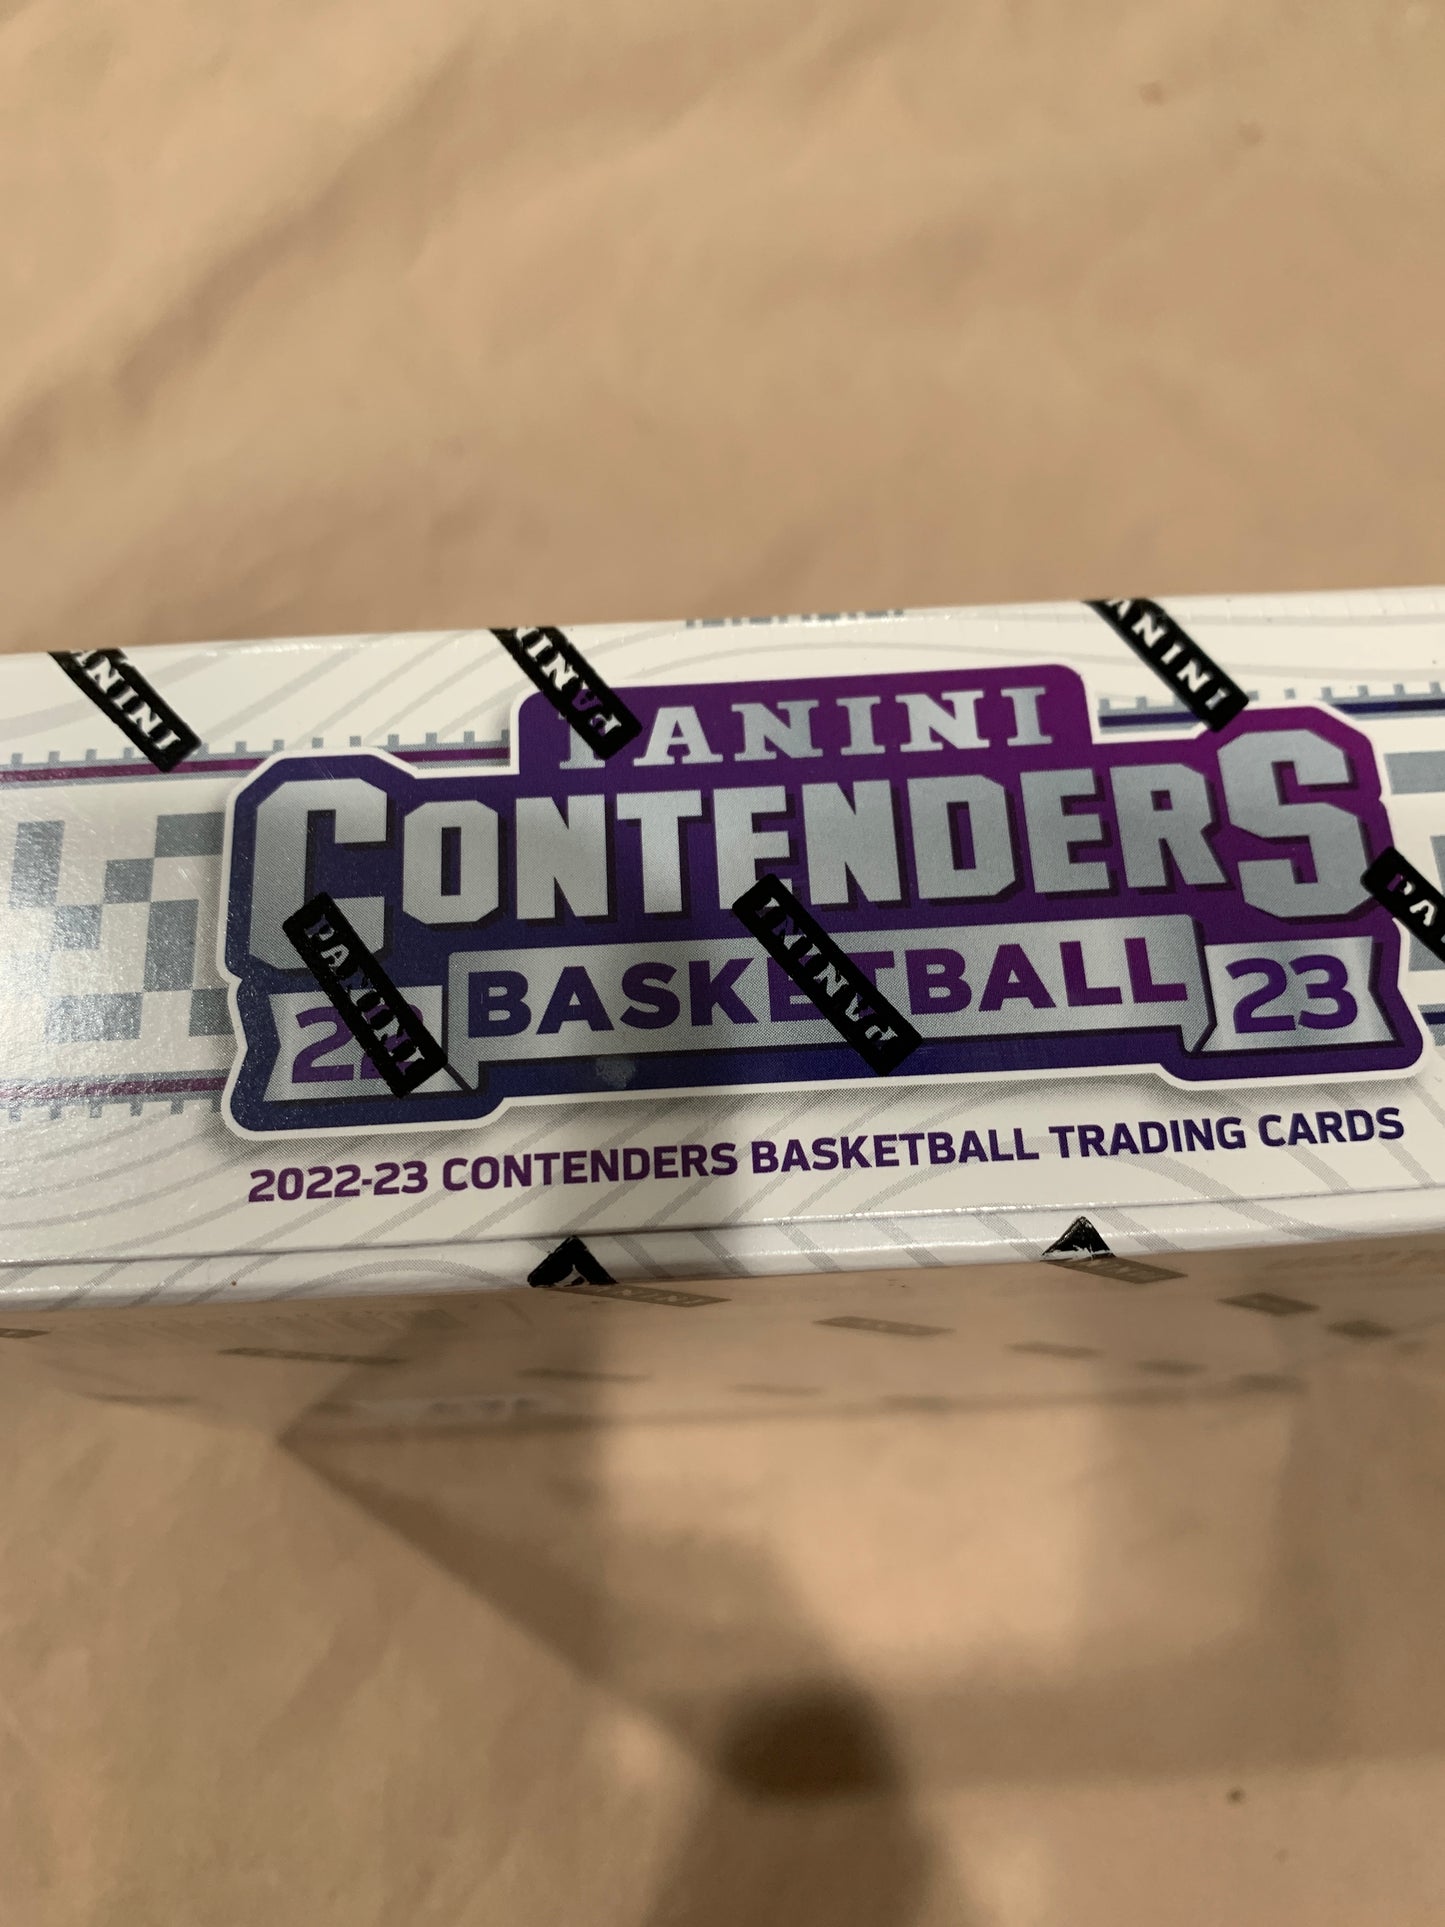 2022/23 Panini Contenders Basketball Hobby Box